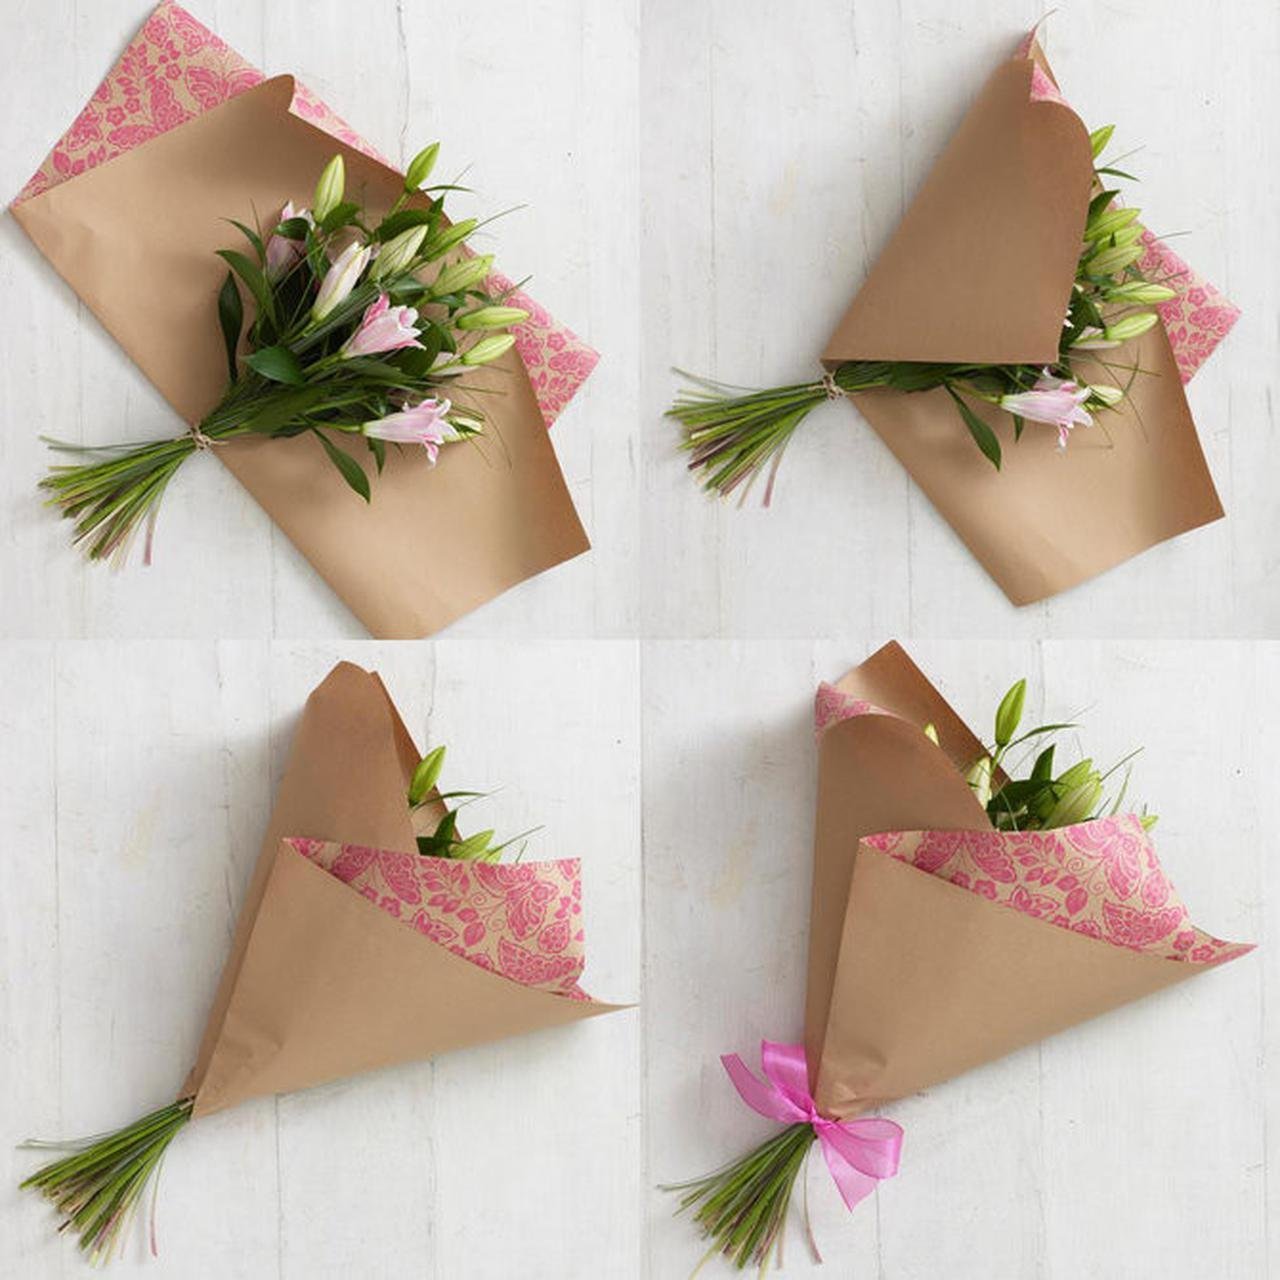 Как красиво упаковать цветы в бумагу пошагово. Упаковка цветов в бумагу. Упаковка цветов в крафтовую бумагу. Завернуть букет в бумагу. Красивая упаковка букета.